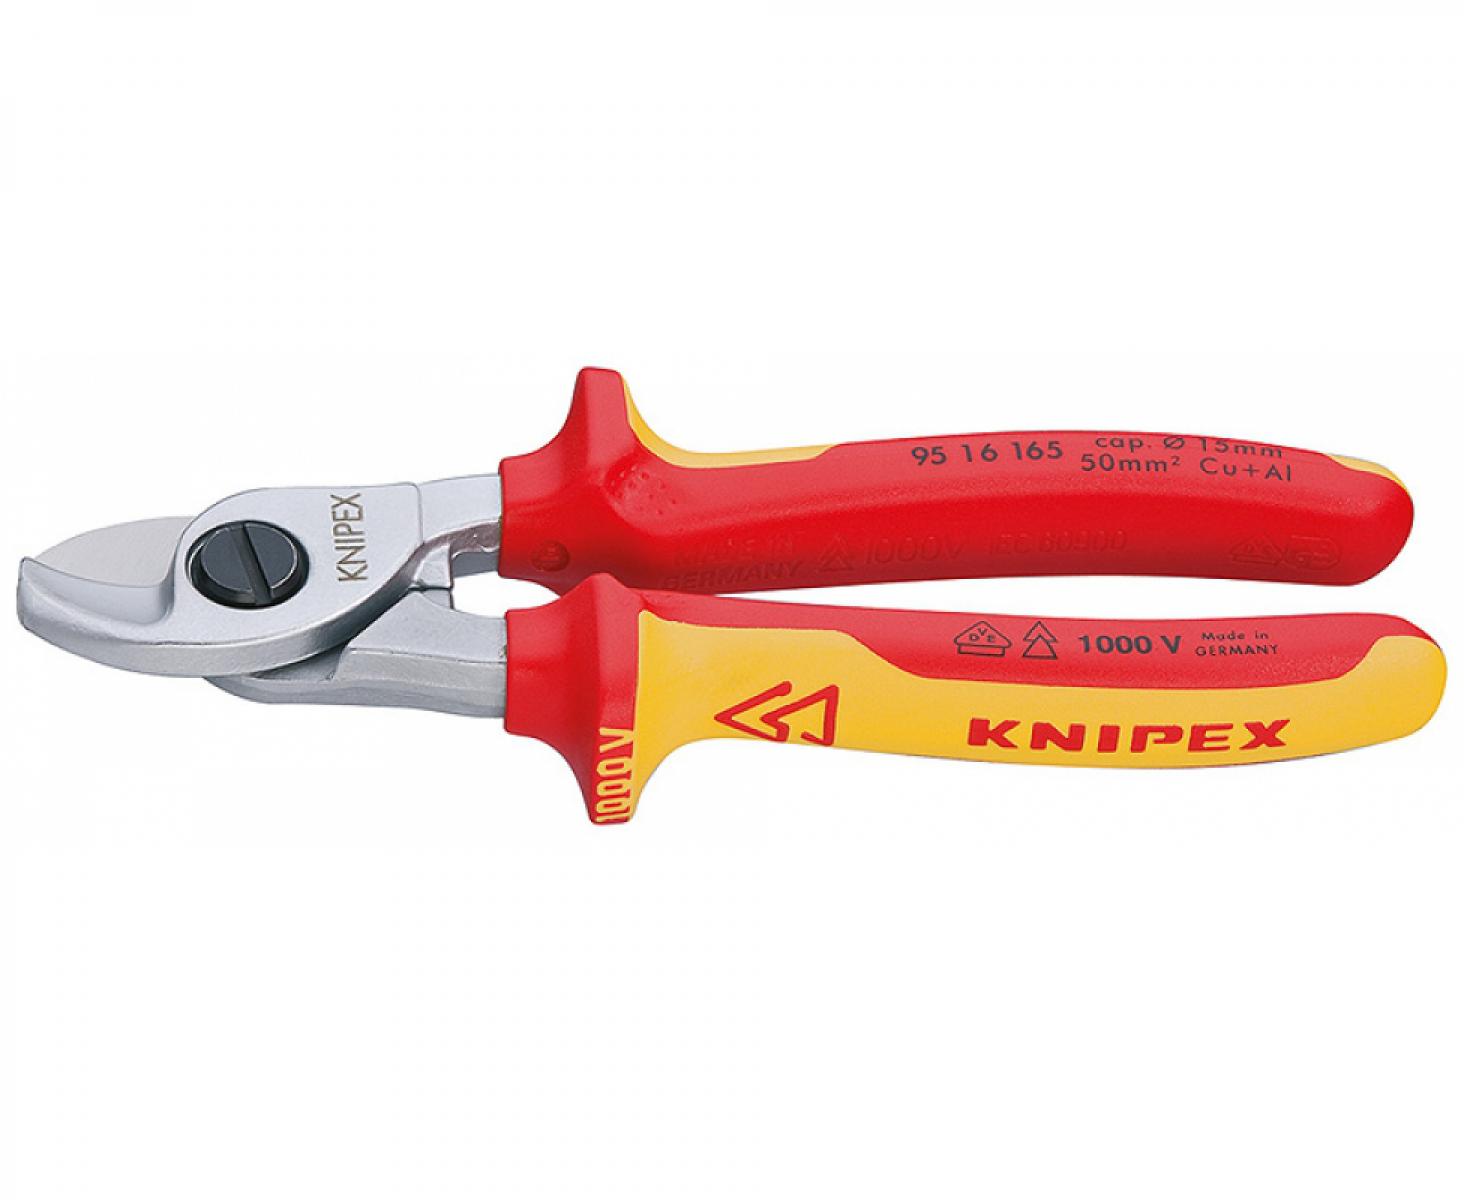 Ножницы для резки кабелей VDE Knipex KN-9516165